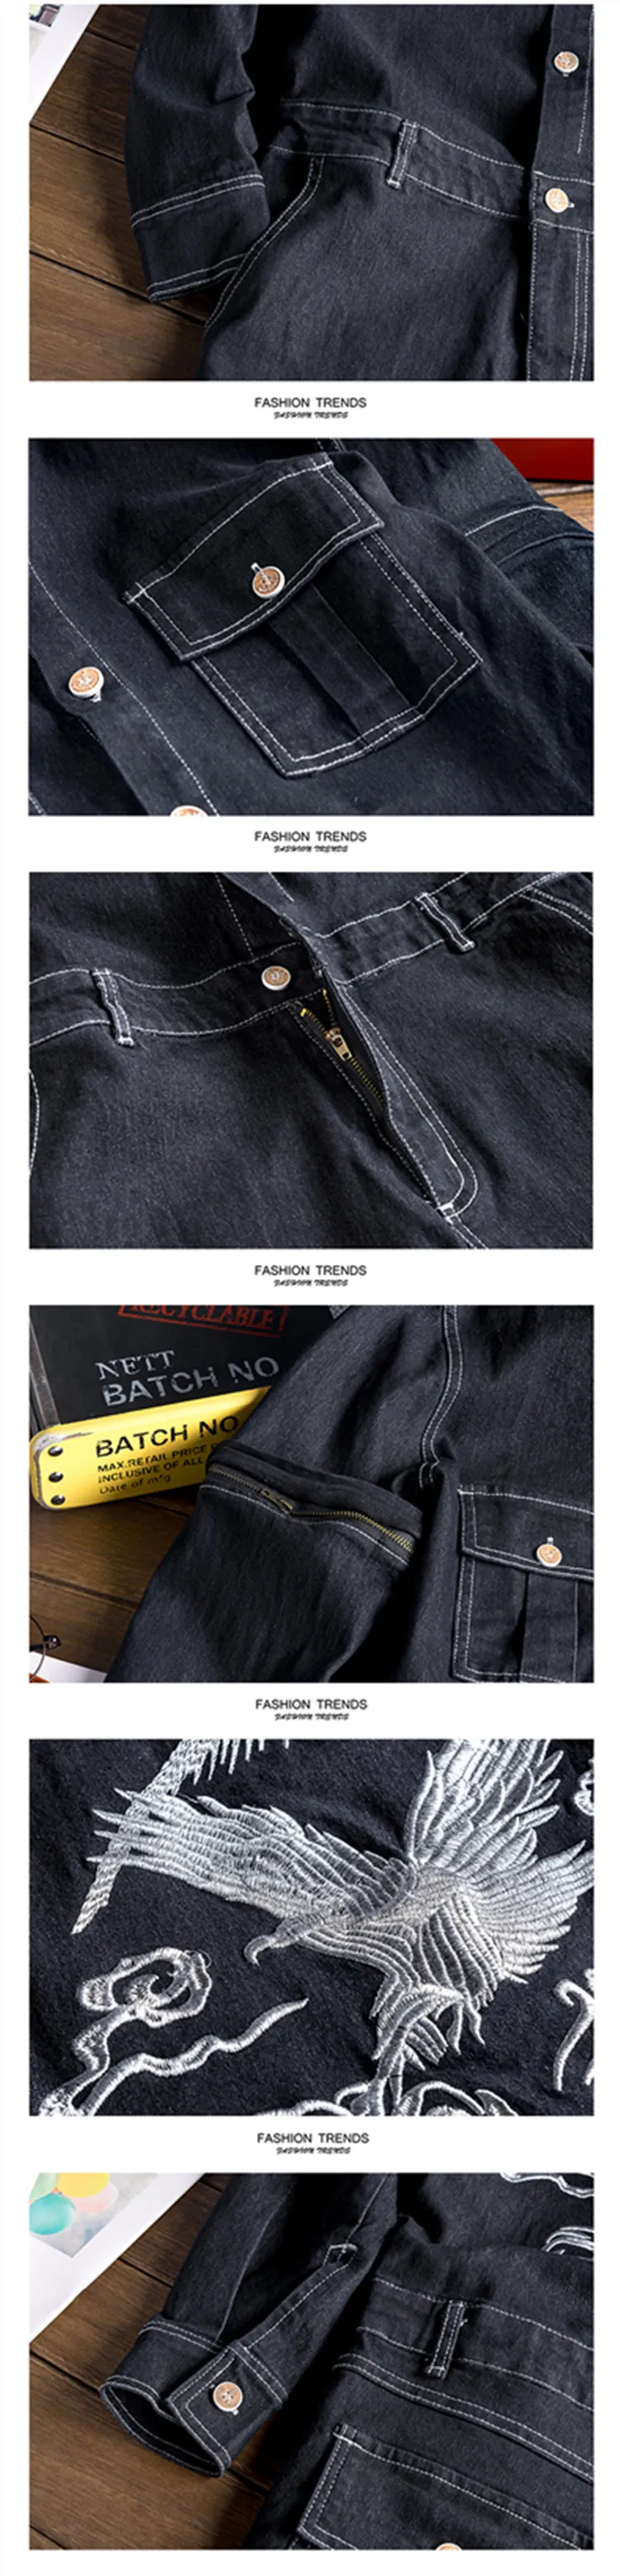 ABOORUN мужские джинсовые комбинезоны с вышивкой орла, длинный съемный рукав, карманы, комбинезоны, рабочие джинсы, молодежные